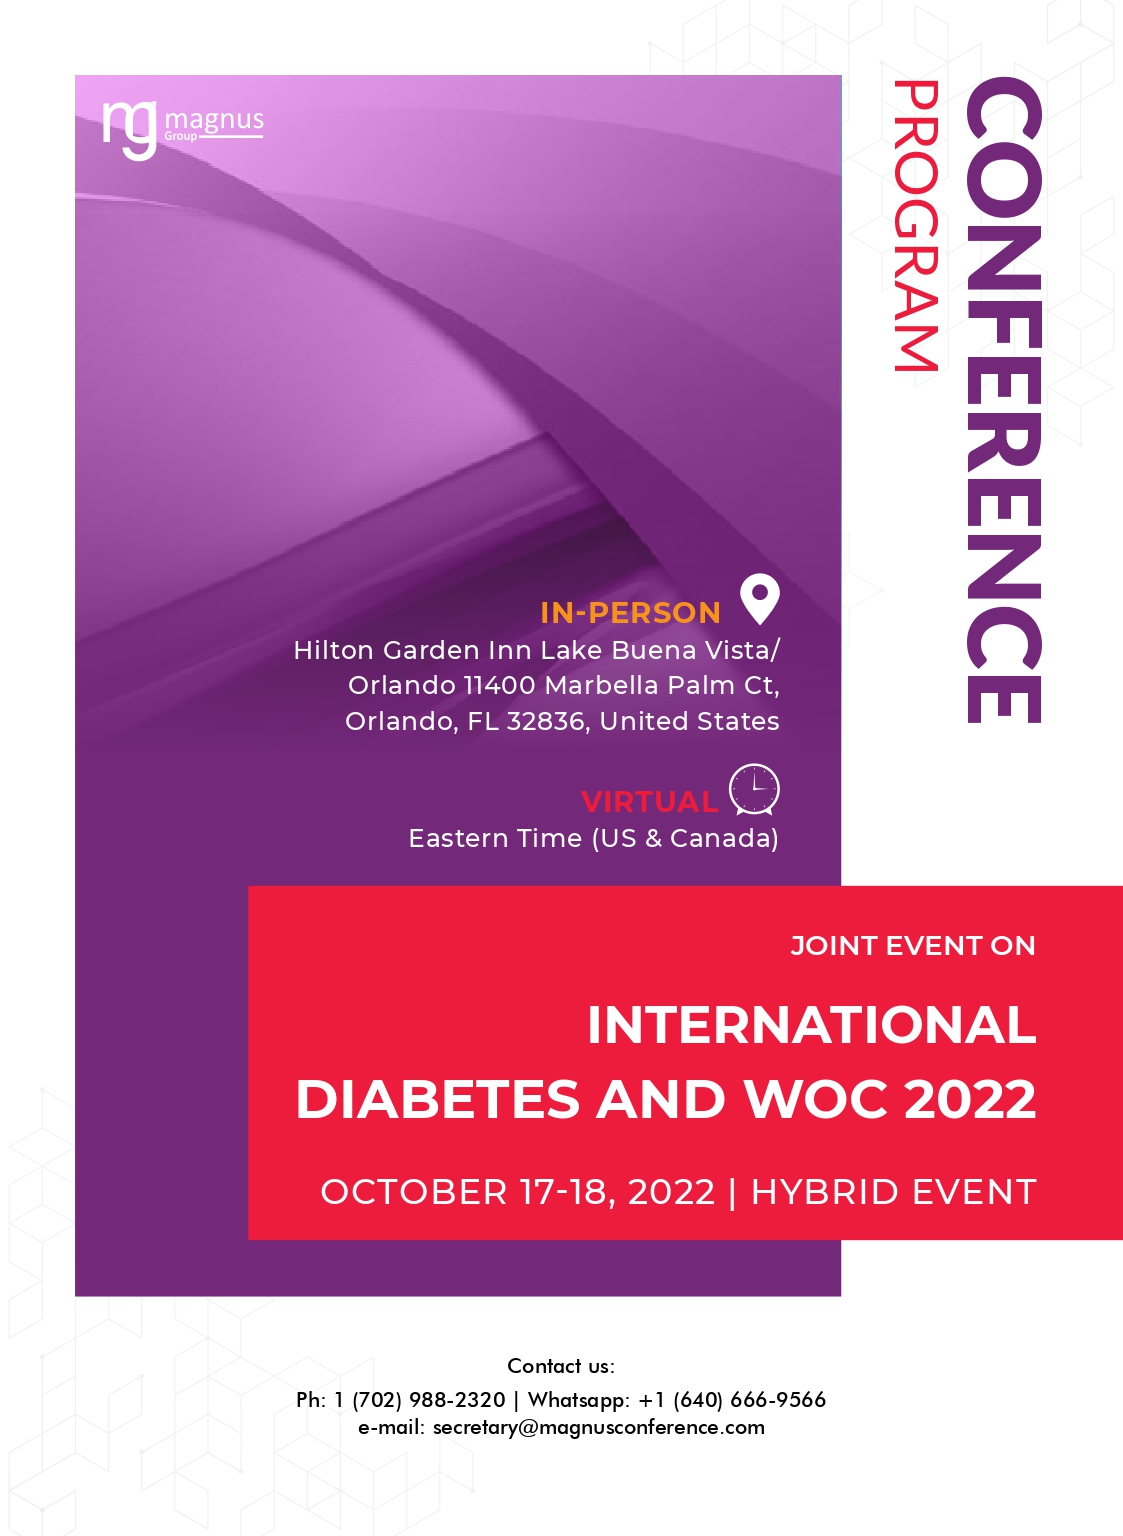 International Conference on Diabetes, Metabolism and Endocrinology | Orlando, Florida, USA Program